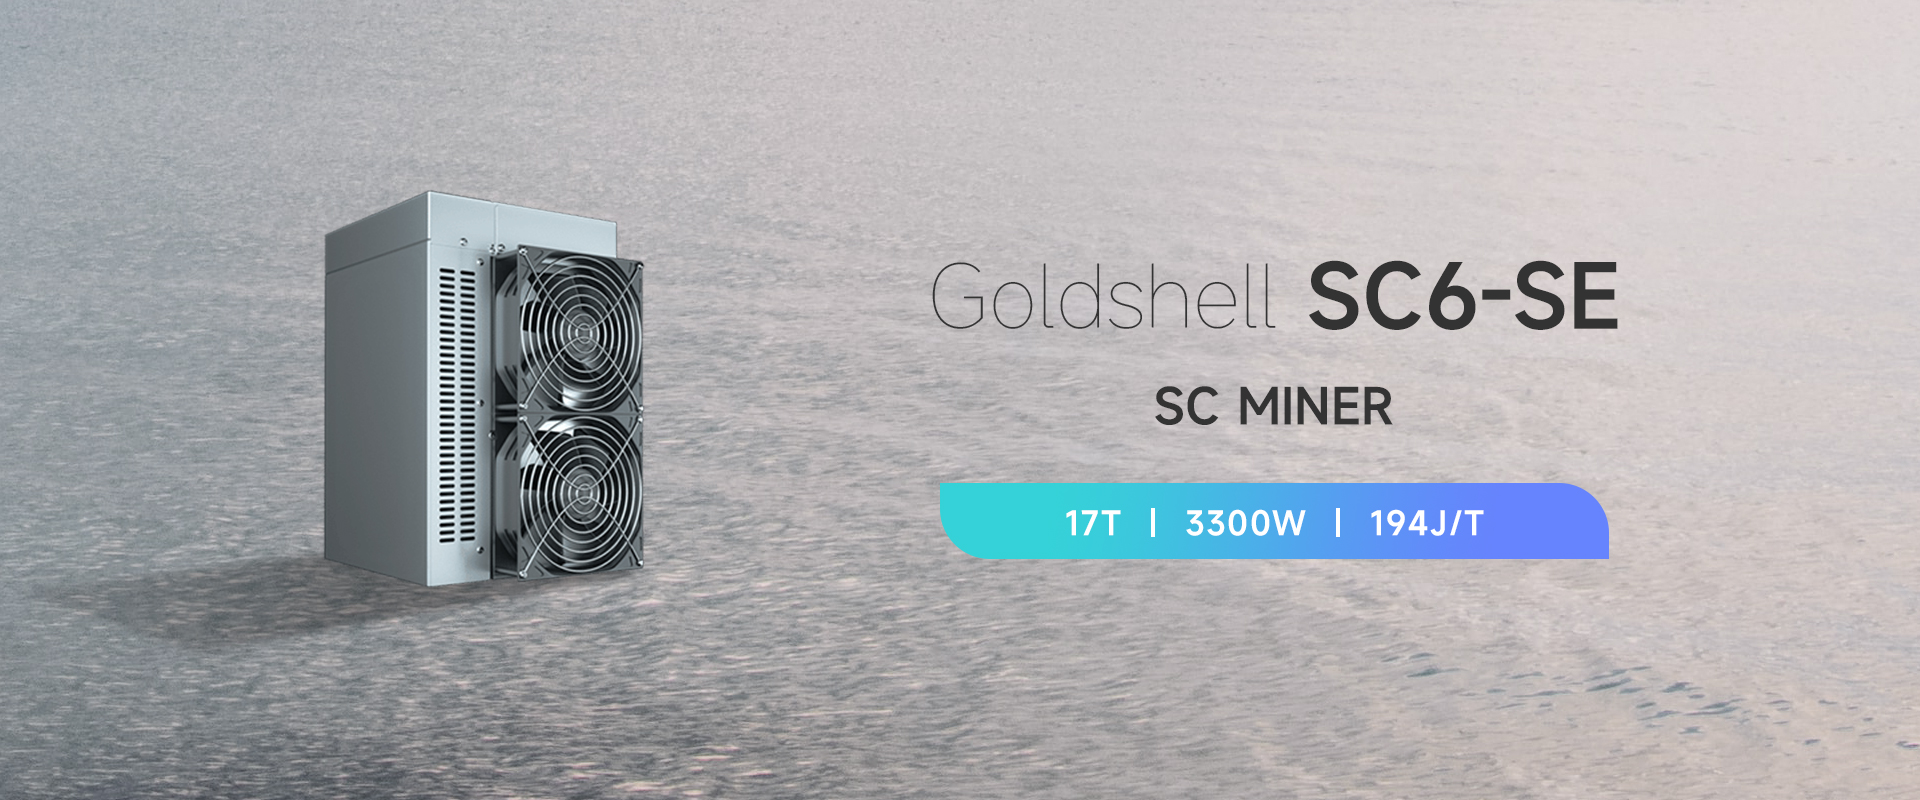 Goldshell-SC6-SE-01